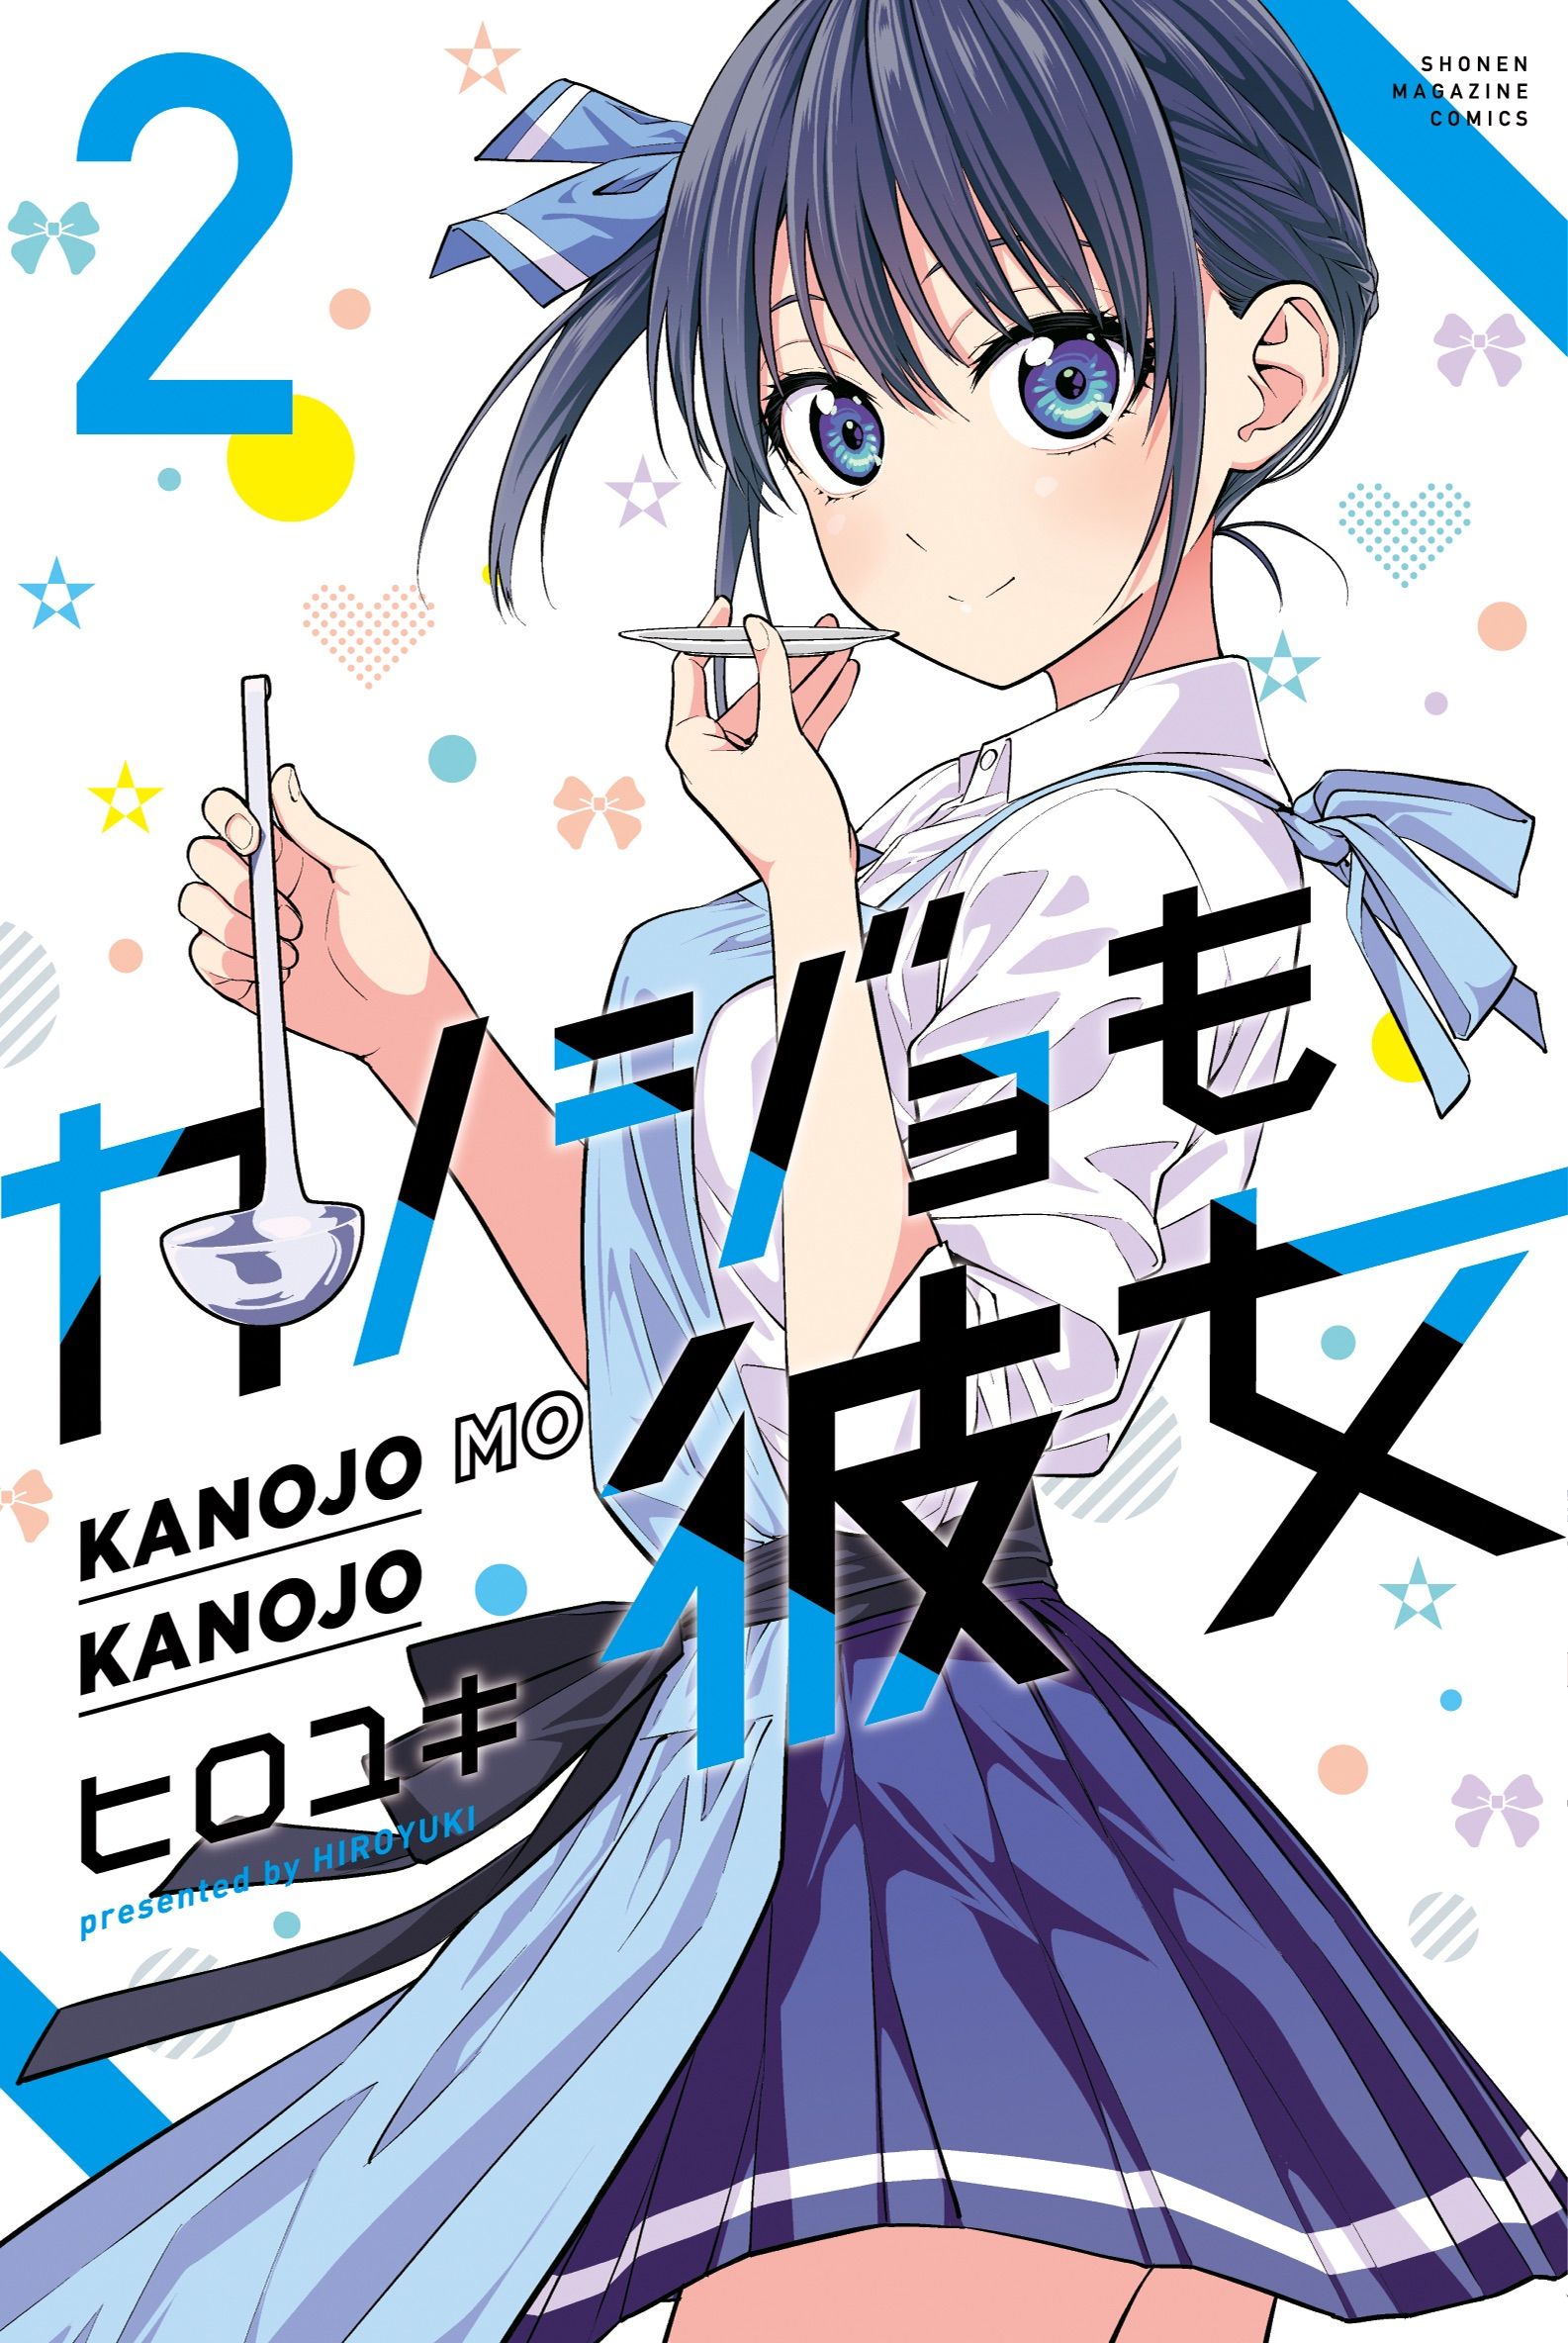 Kanojo mo Kanojo Anime Image Board